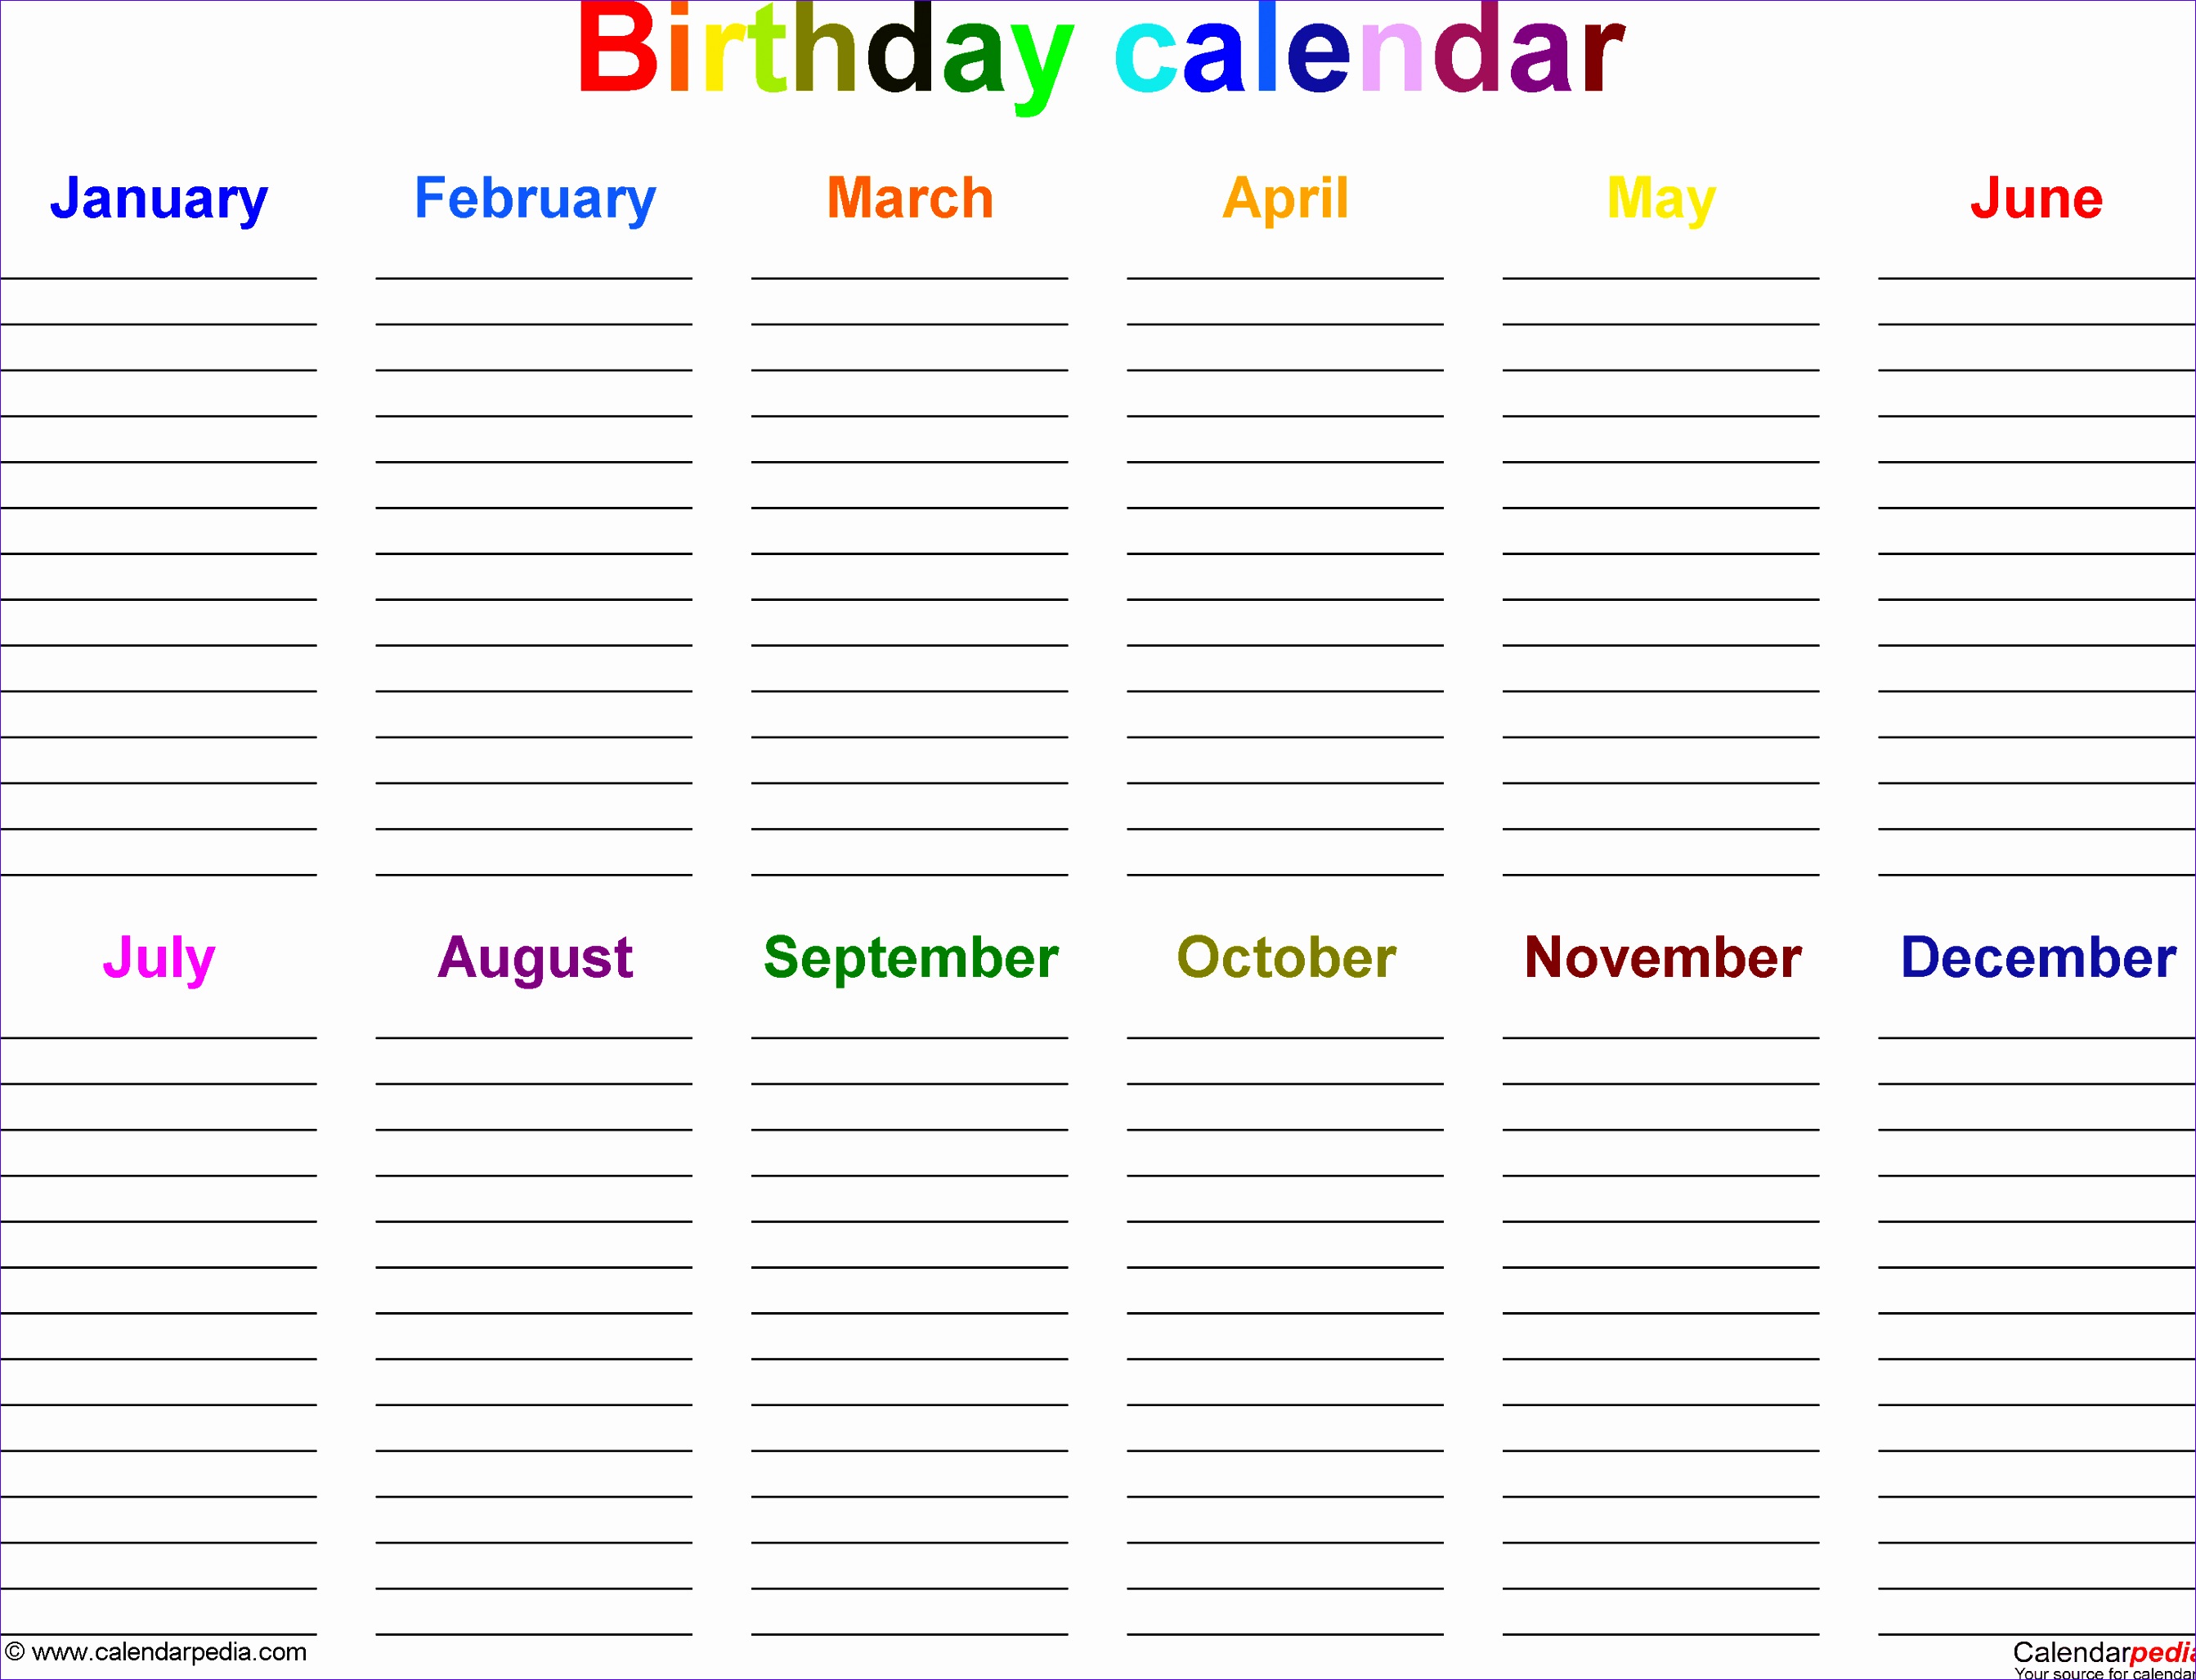 birthday calendar